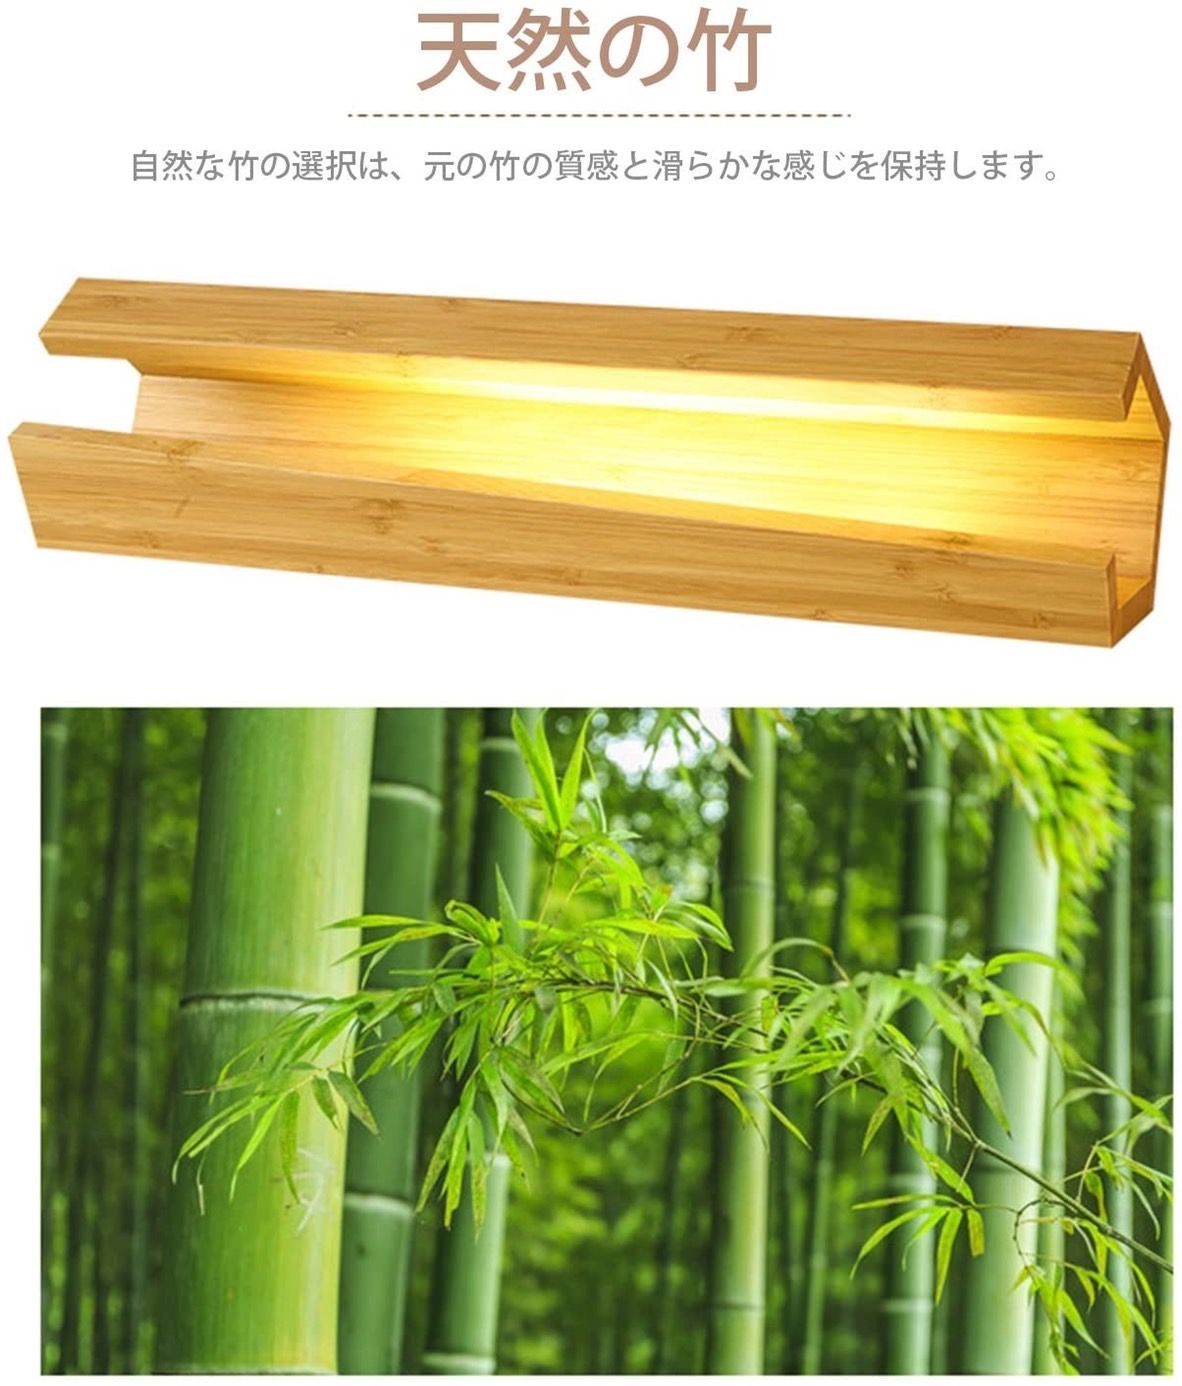 ❤モダンレトロでお洒落な北欧デザインが大注目♪❤高級天然竹製